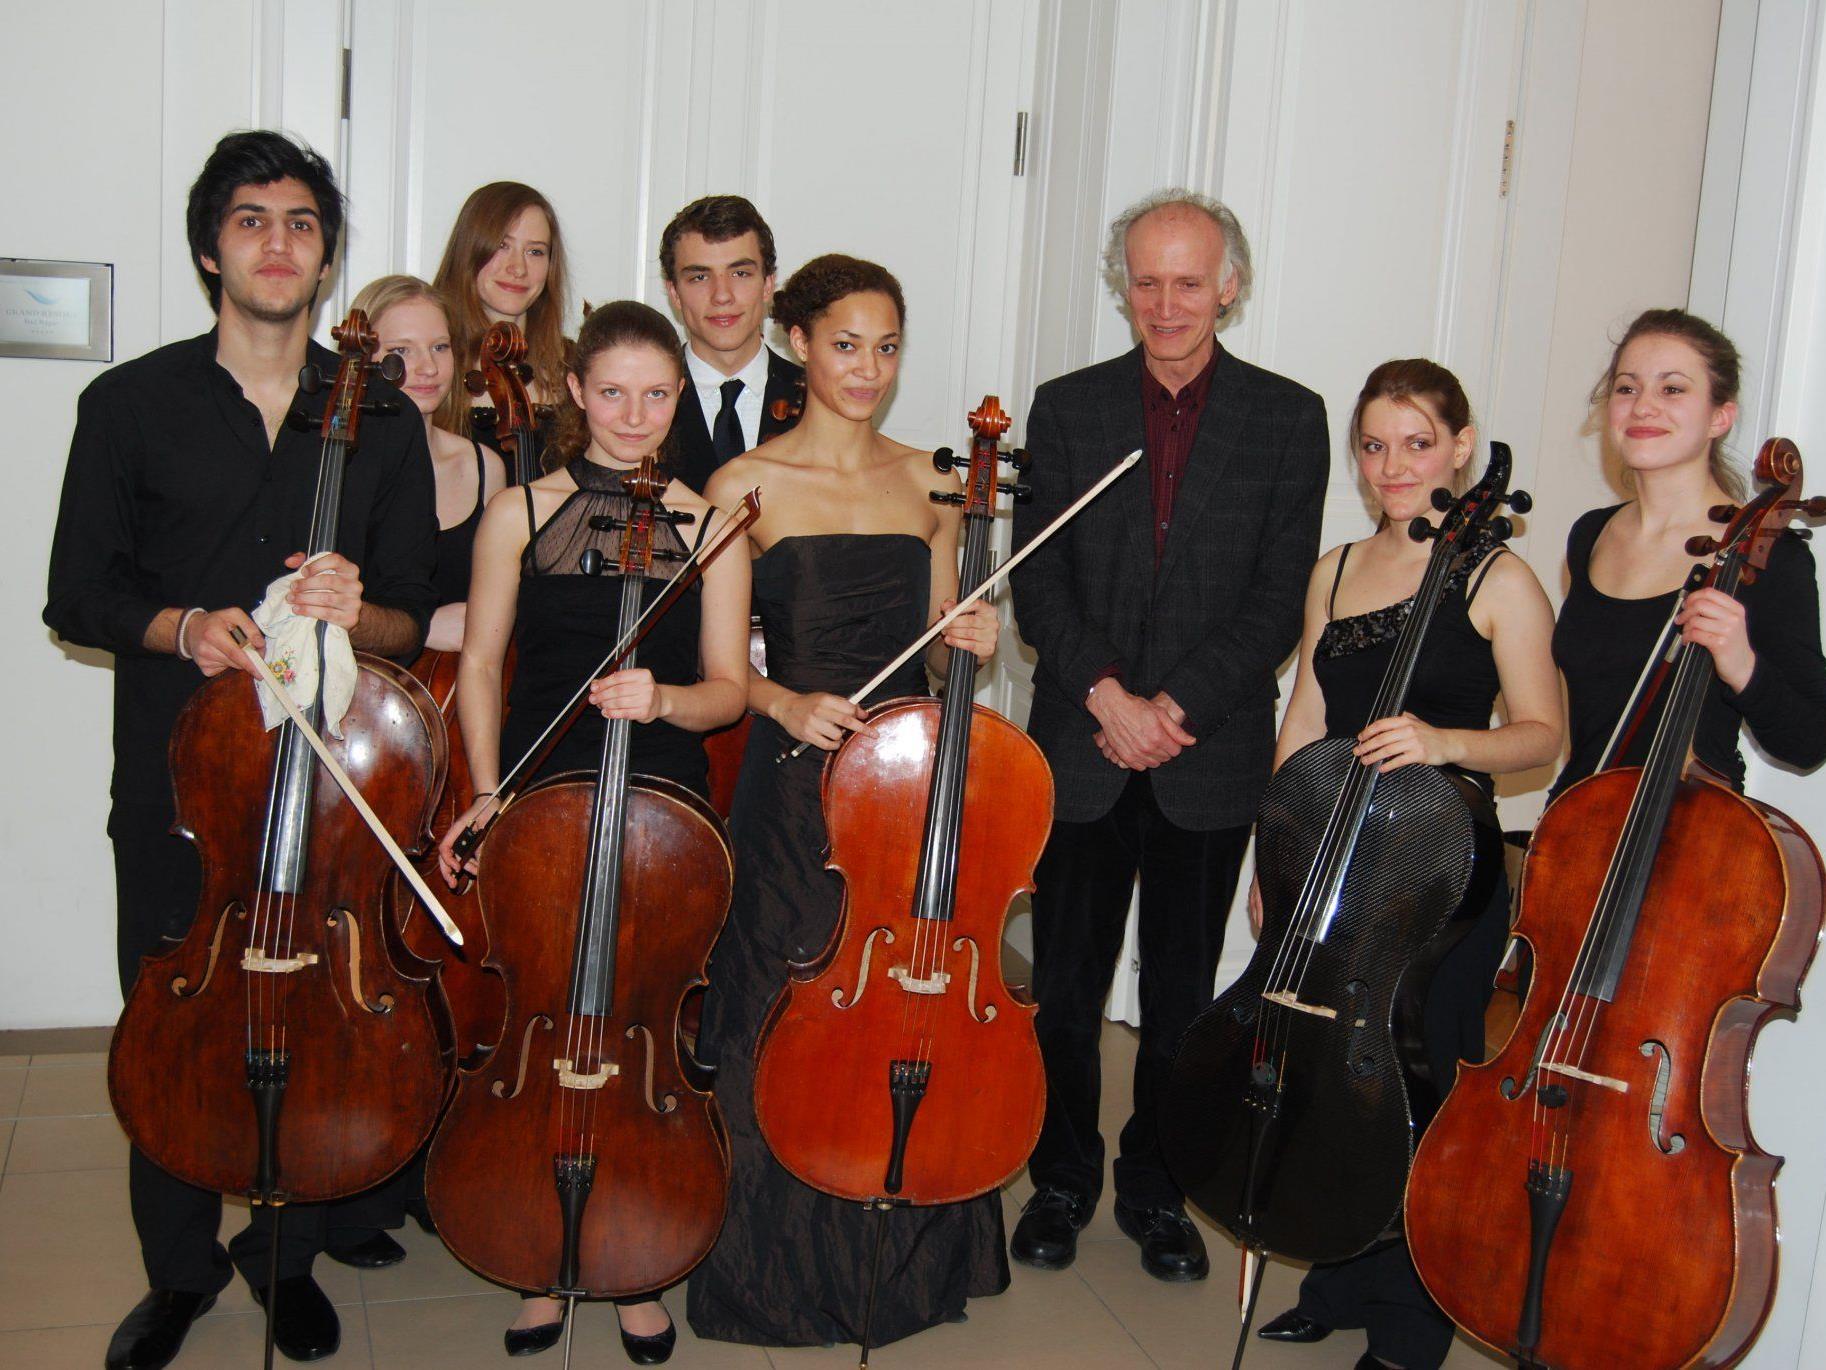 Das jugendliche Cello-Ensemble mit Kian Soltani (links) nach der Matinee am Samstag.